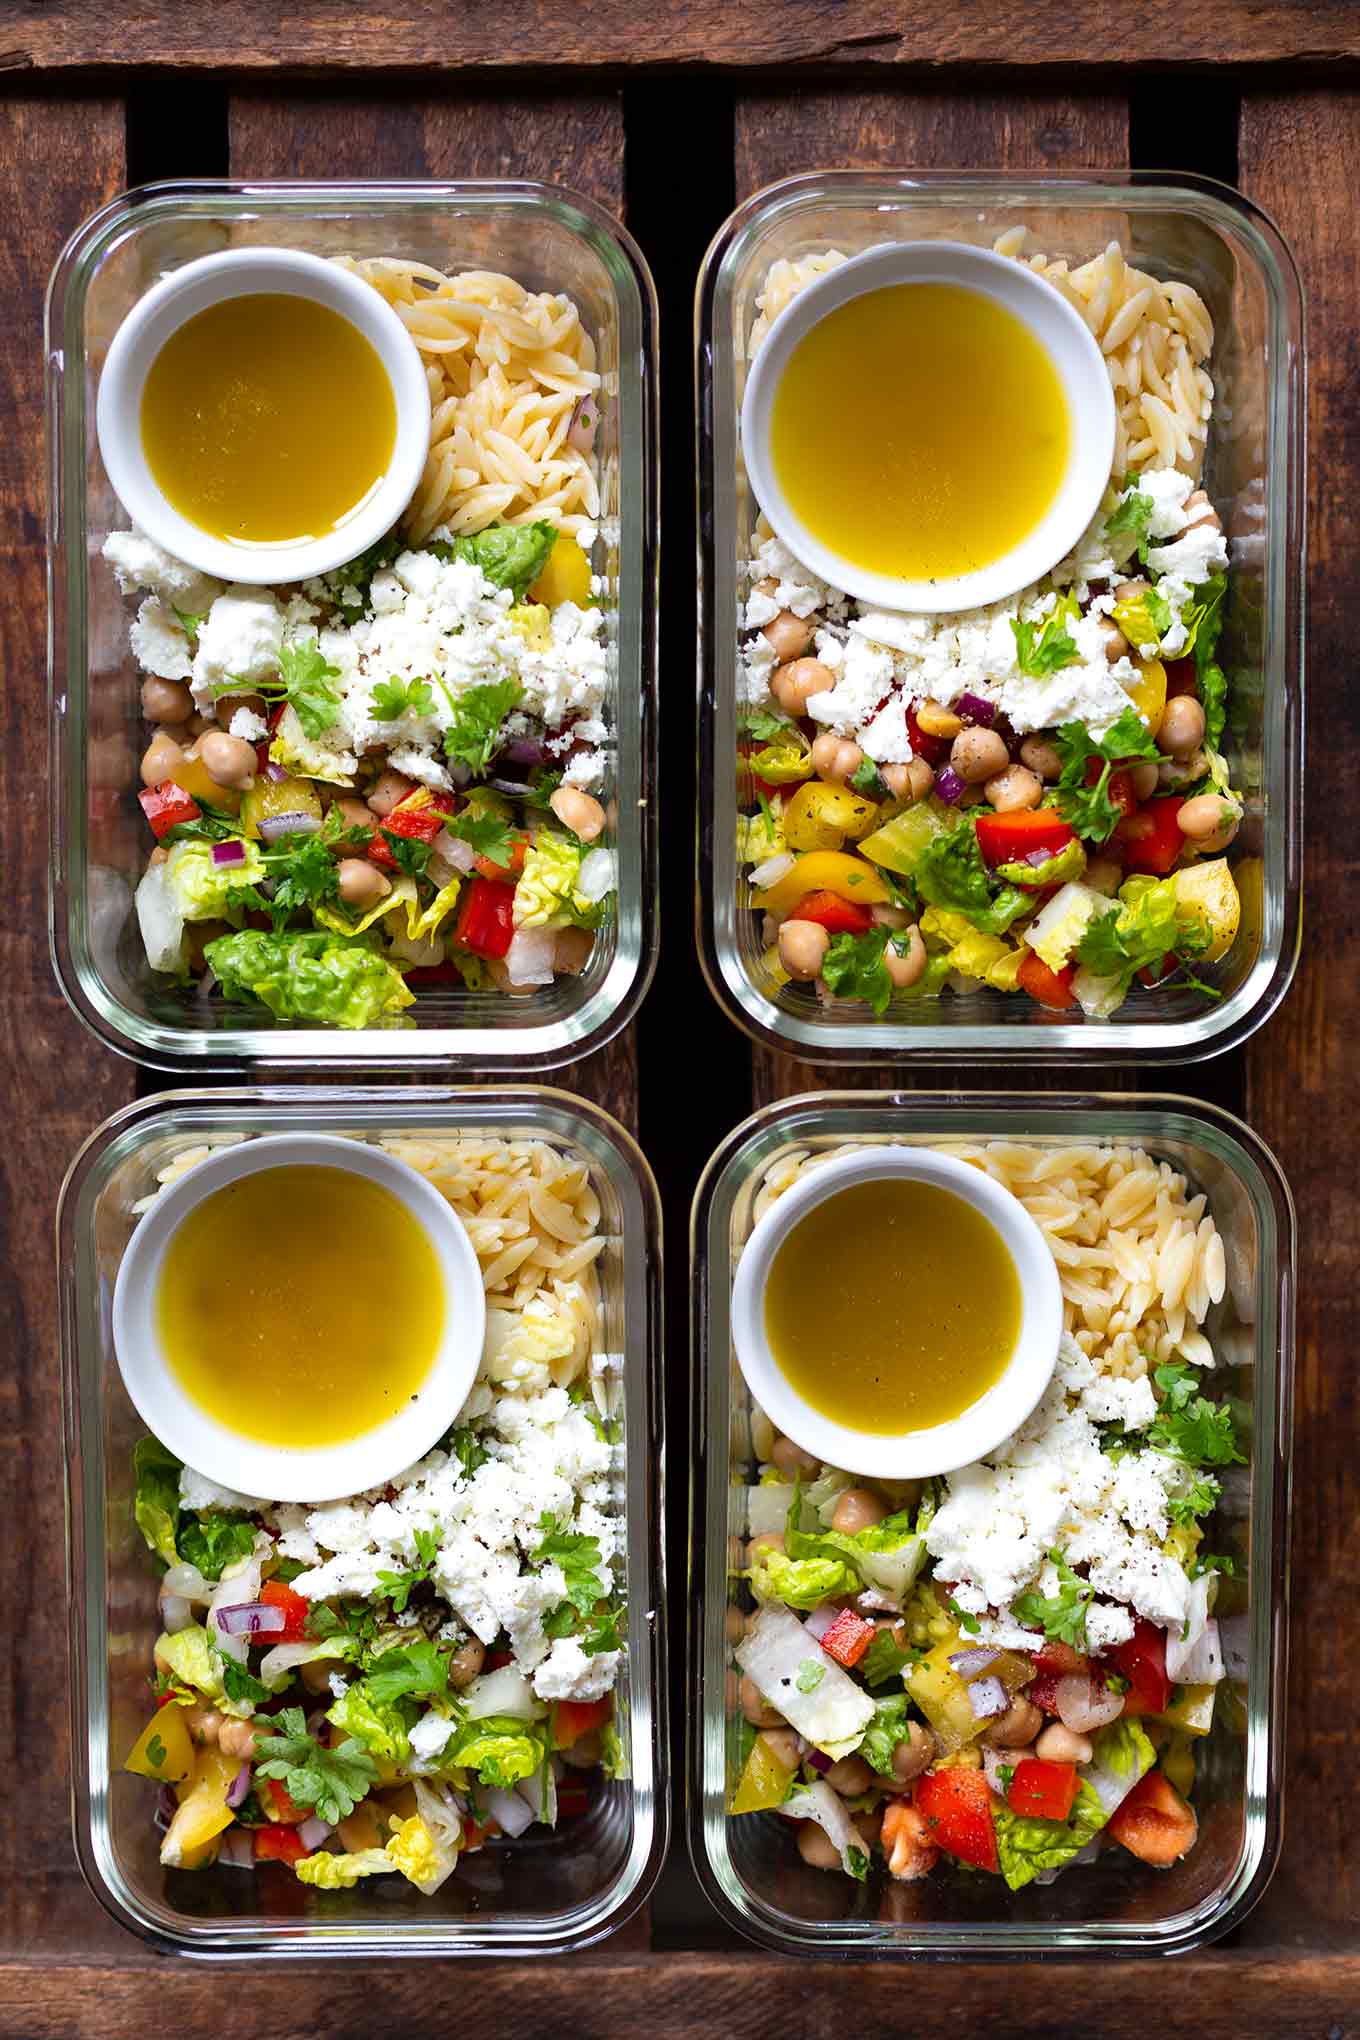 Orzo-Kichererbsen-Meal Prep-Salat mit Feta. Dieses super einfache, gesunde Meal Prep Rezept ist schnell gemacht und SO gut! - Kochkarussell Foodblog #mealprep #salat #kochkarussell